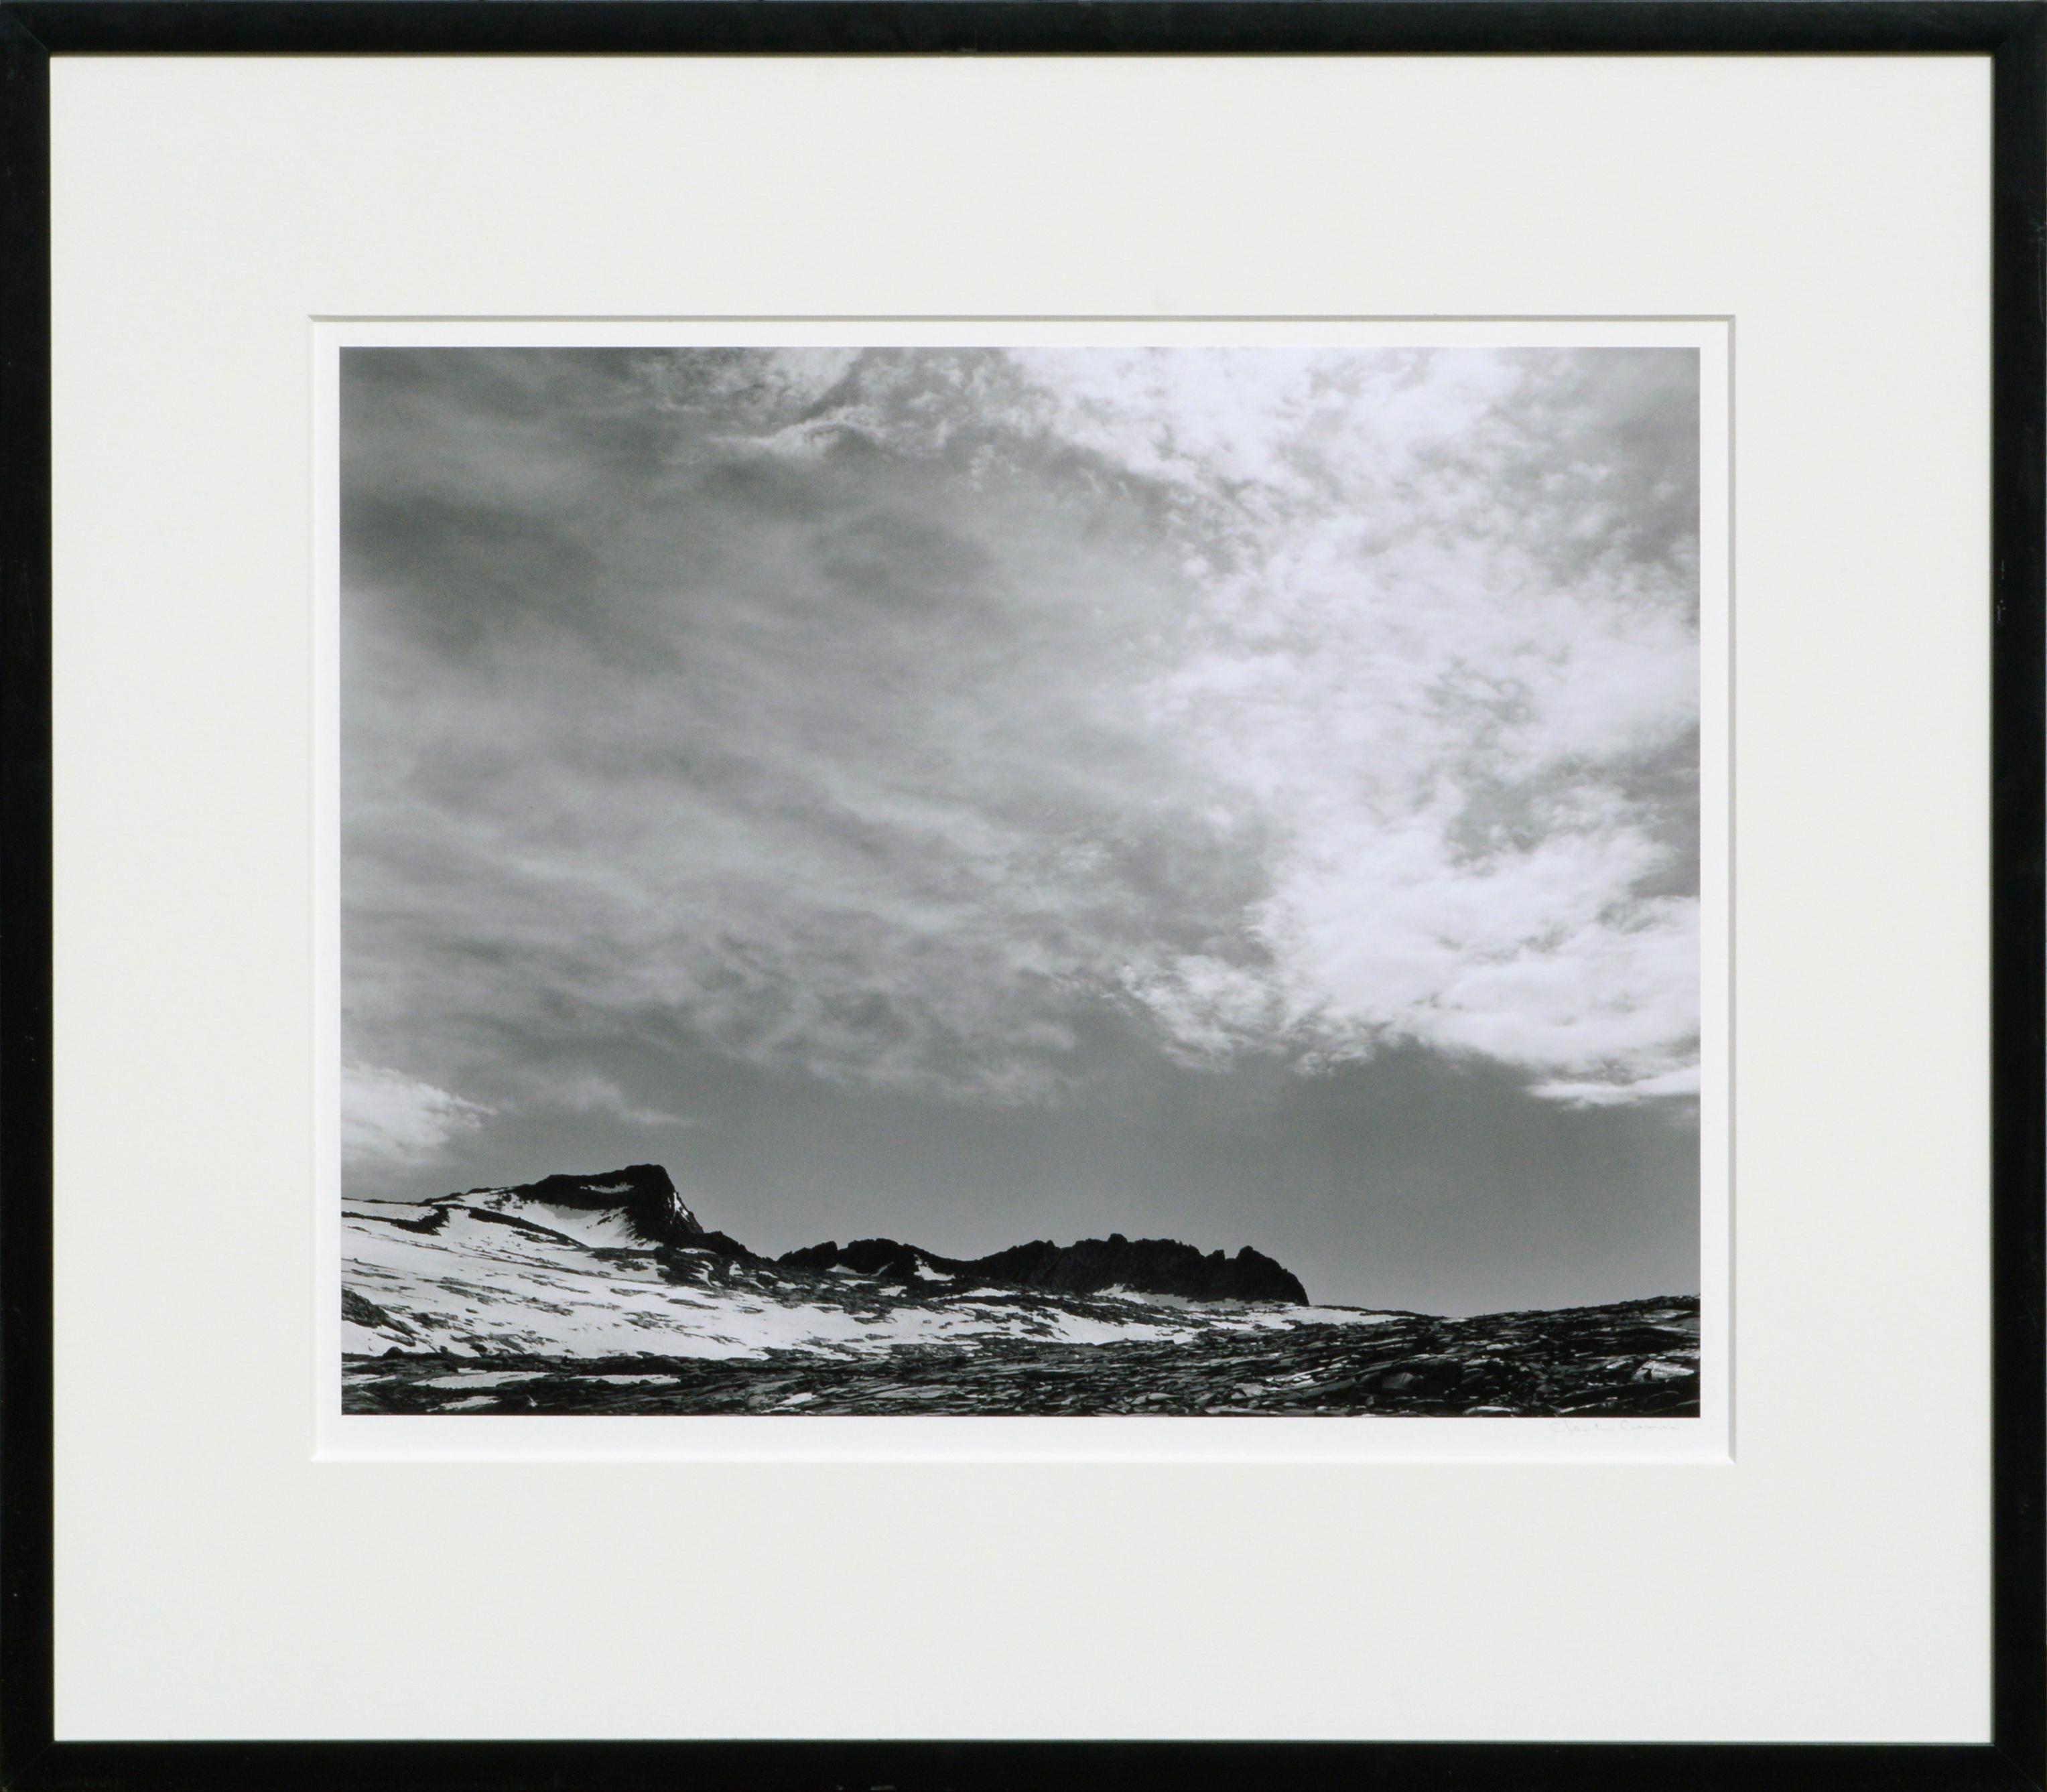 Black and White Photograph Charles Cramer - Nuages du Mt Lyell, Yosemite - Photographie de paysage californien en noir et blanc